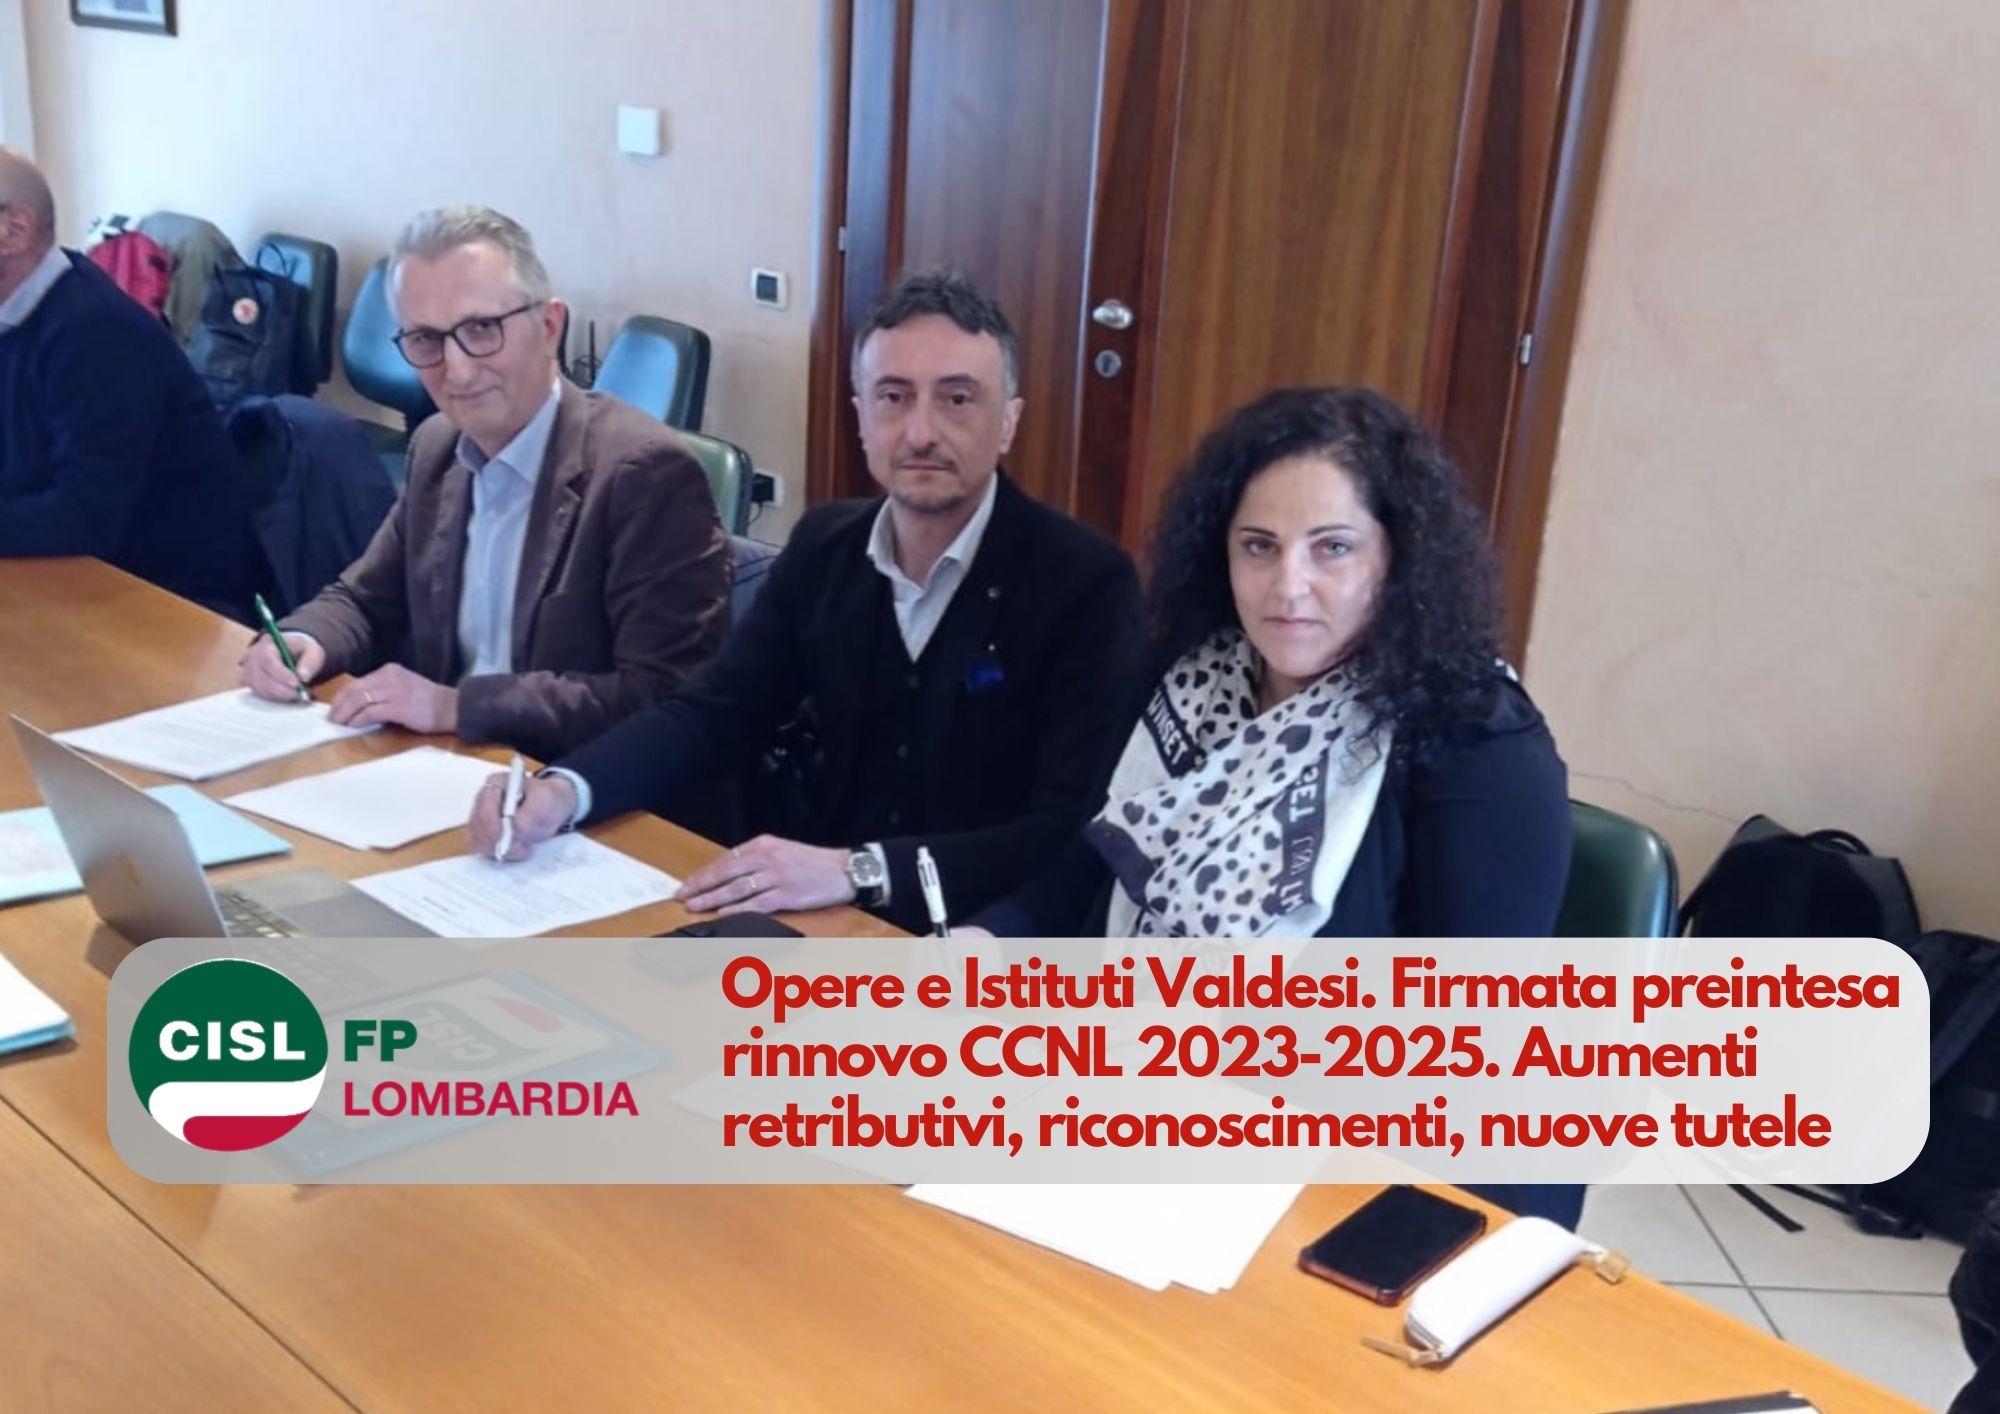 CISL FP Lombardia. Opere e Istituti Valdesi. Sottoscritta preintesa rinnovo CCNL 2023-2025.